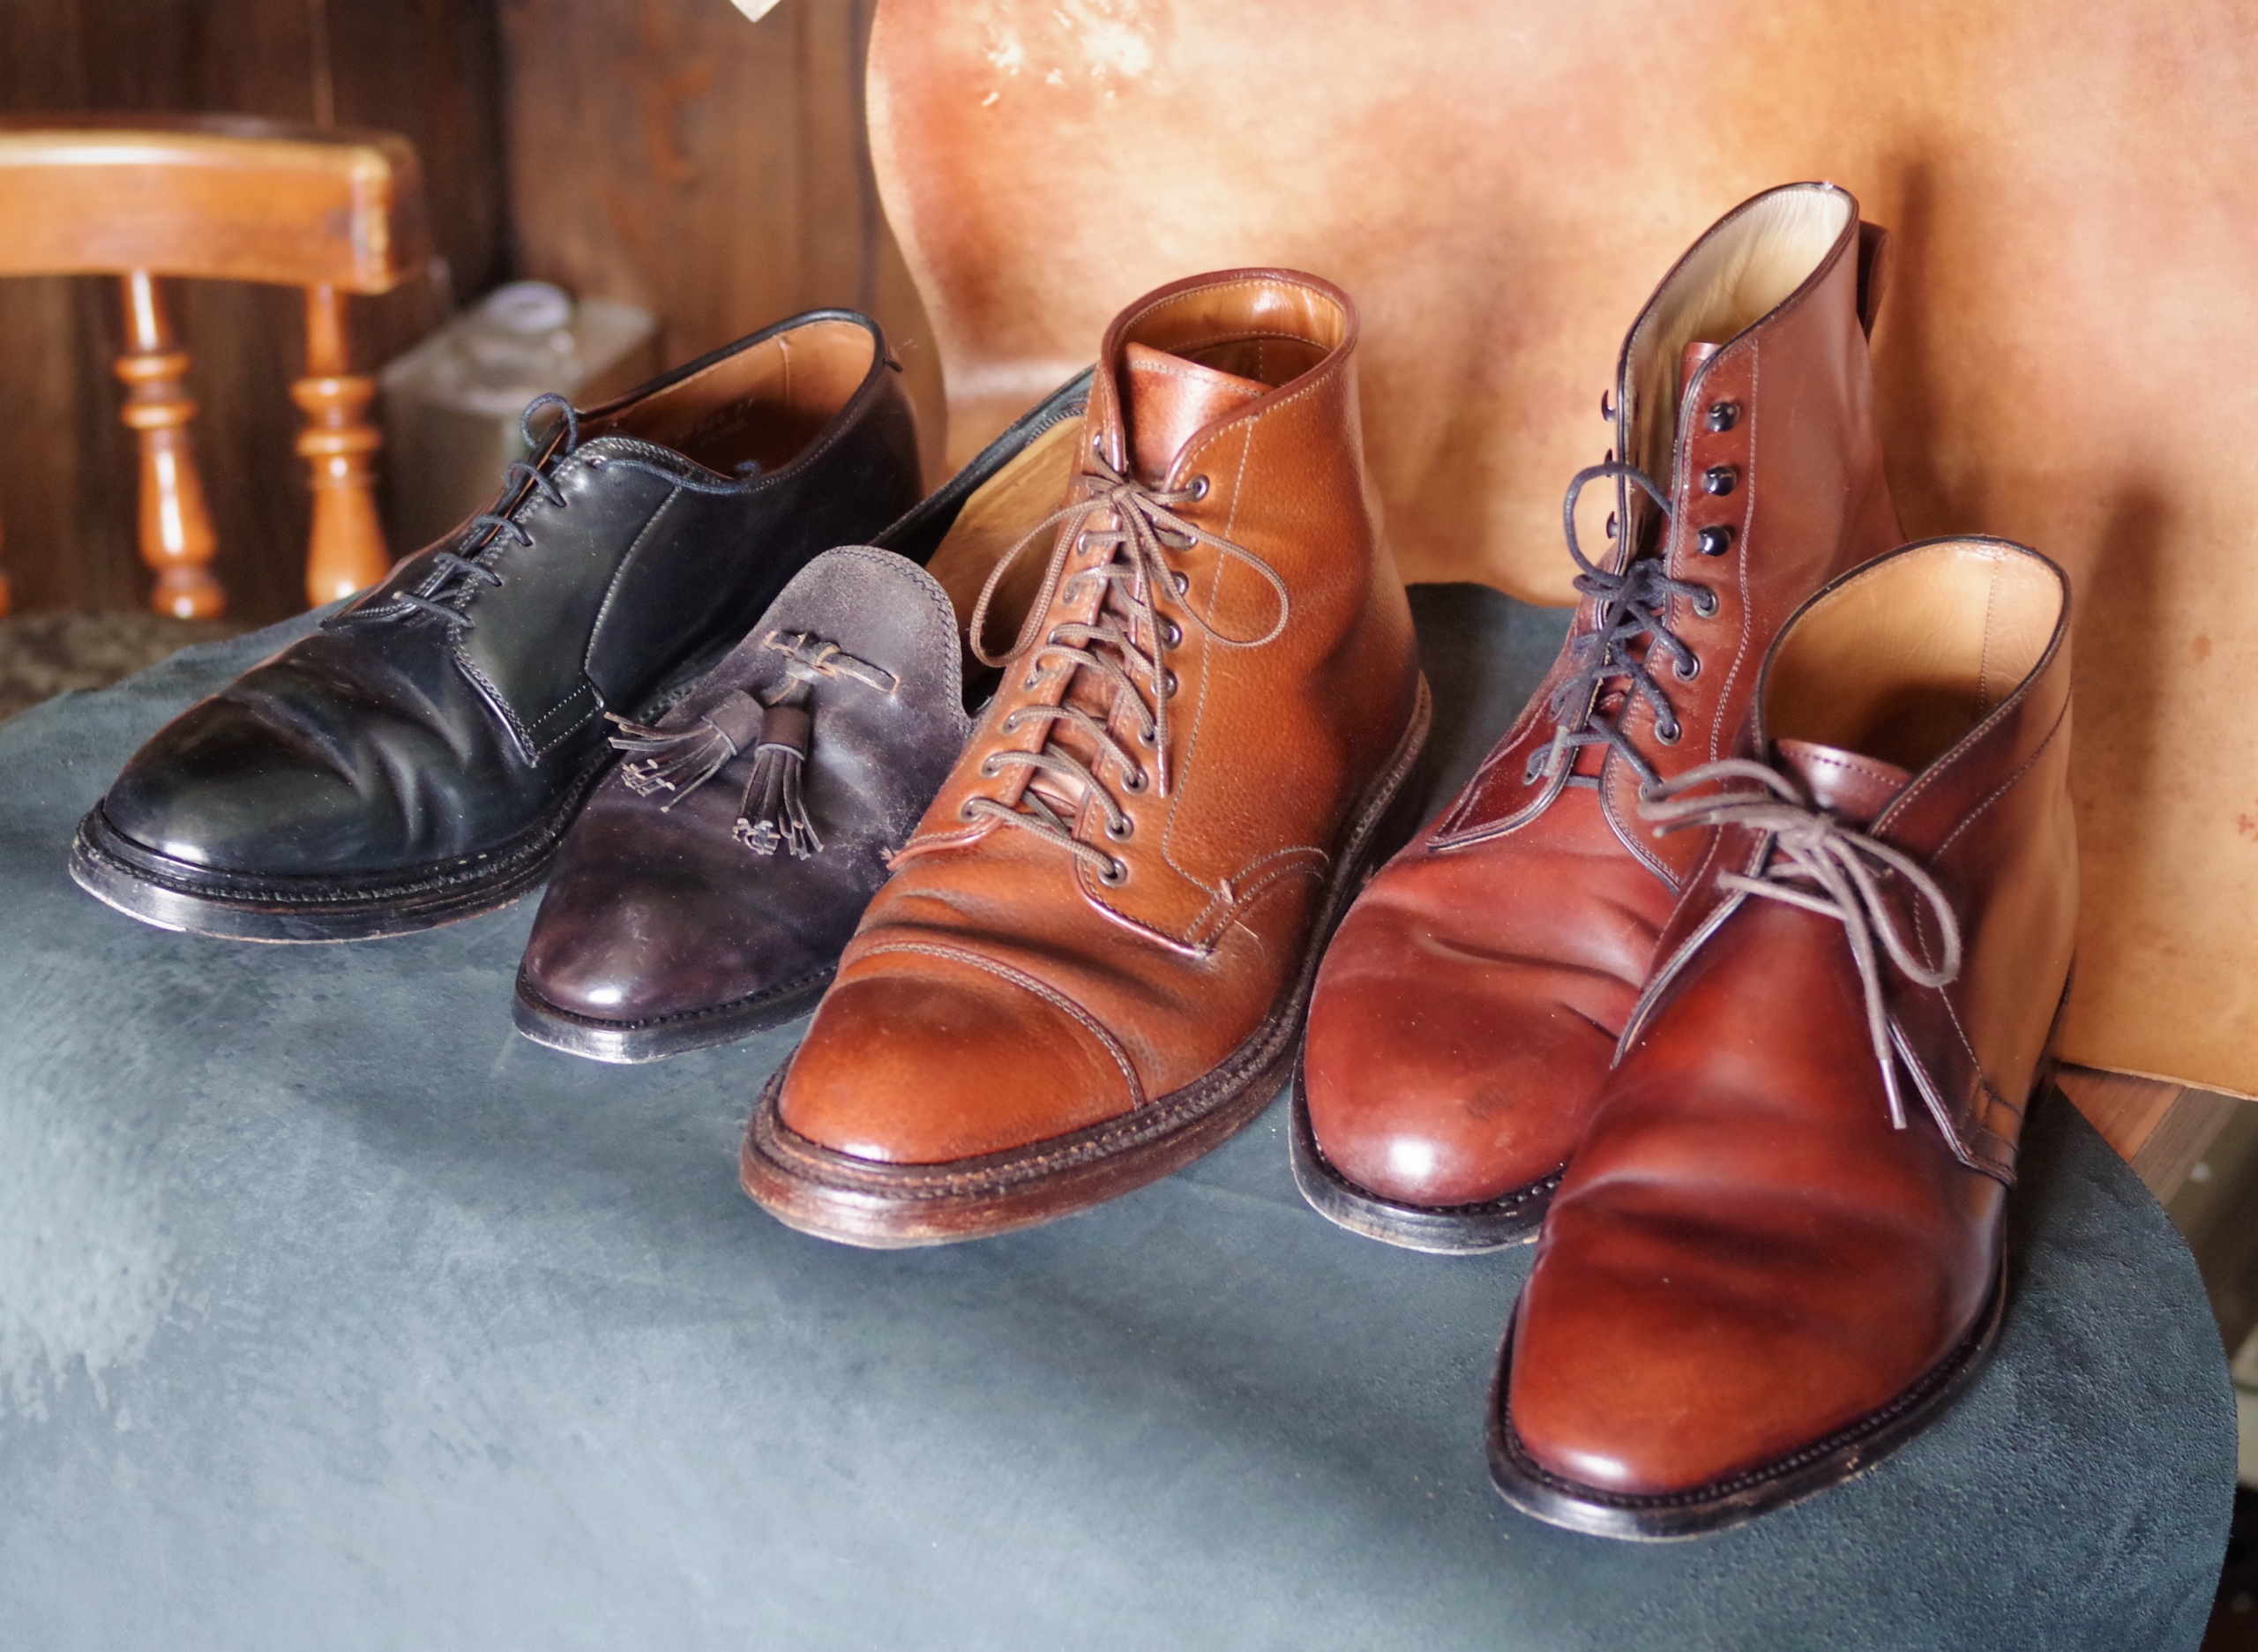 革靴に関するおはなし。 第2回-③ 革靴の流行りについて - 革靴 ...